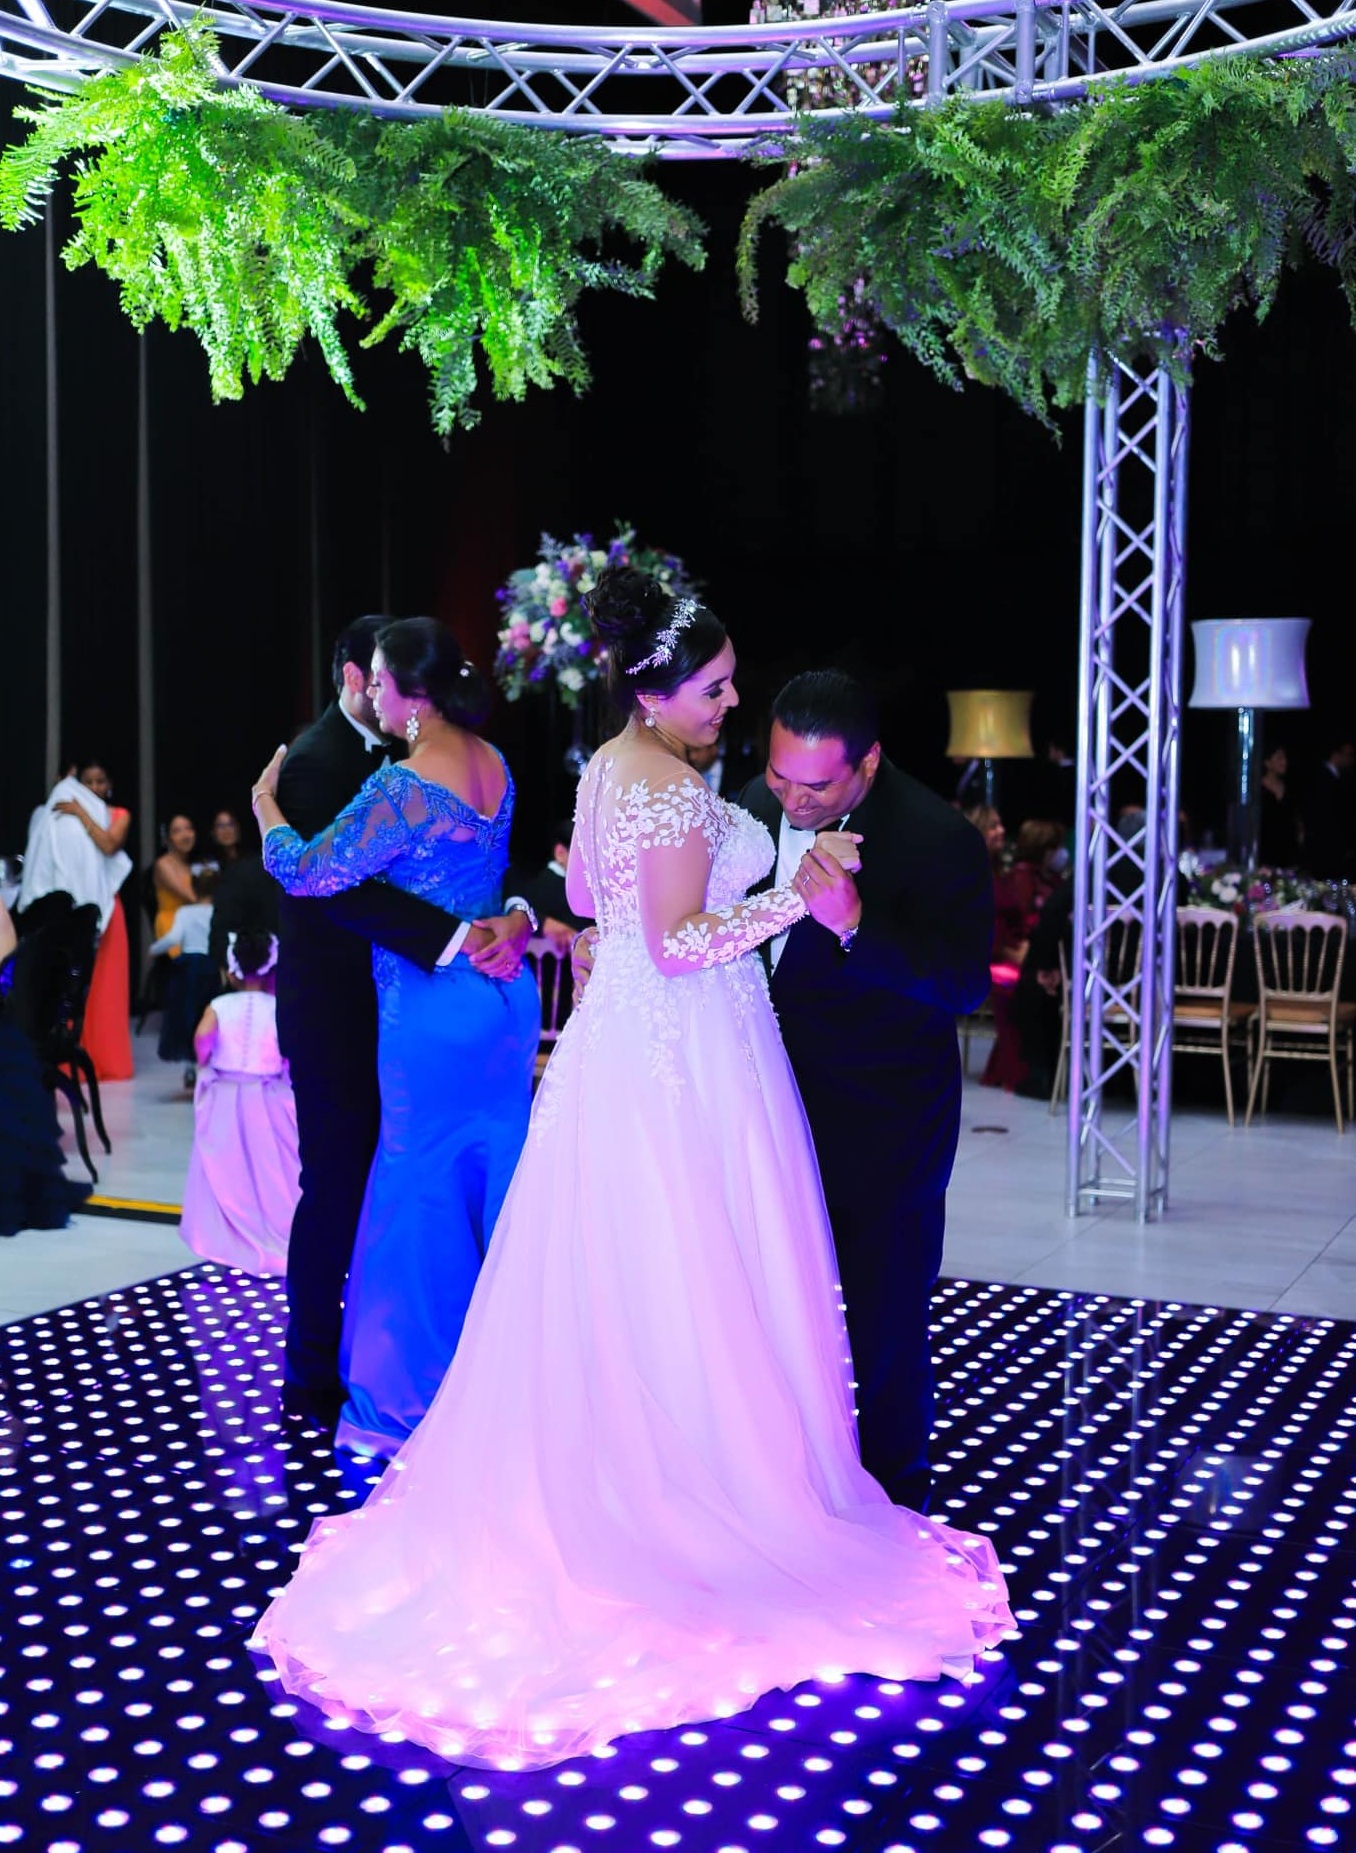 José Javier Zúniga y Rocío Verdial casados ante Dios en una boda inolvidable